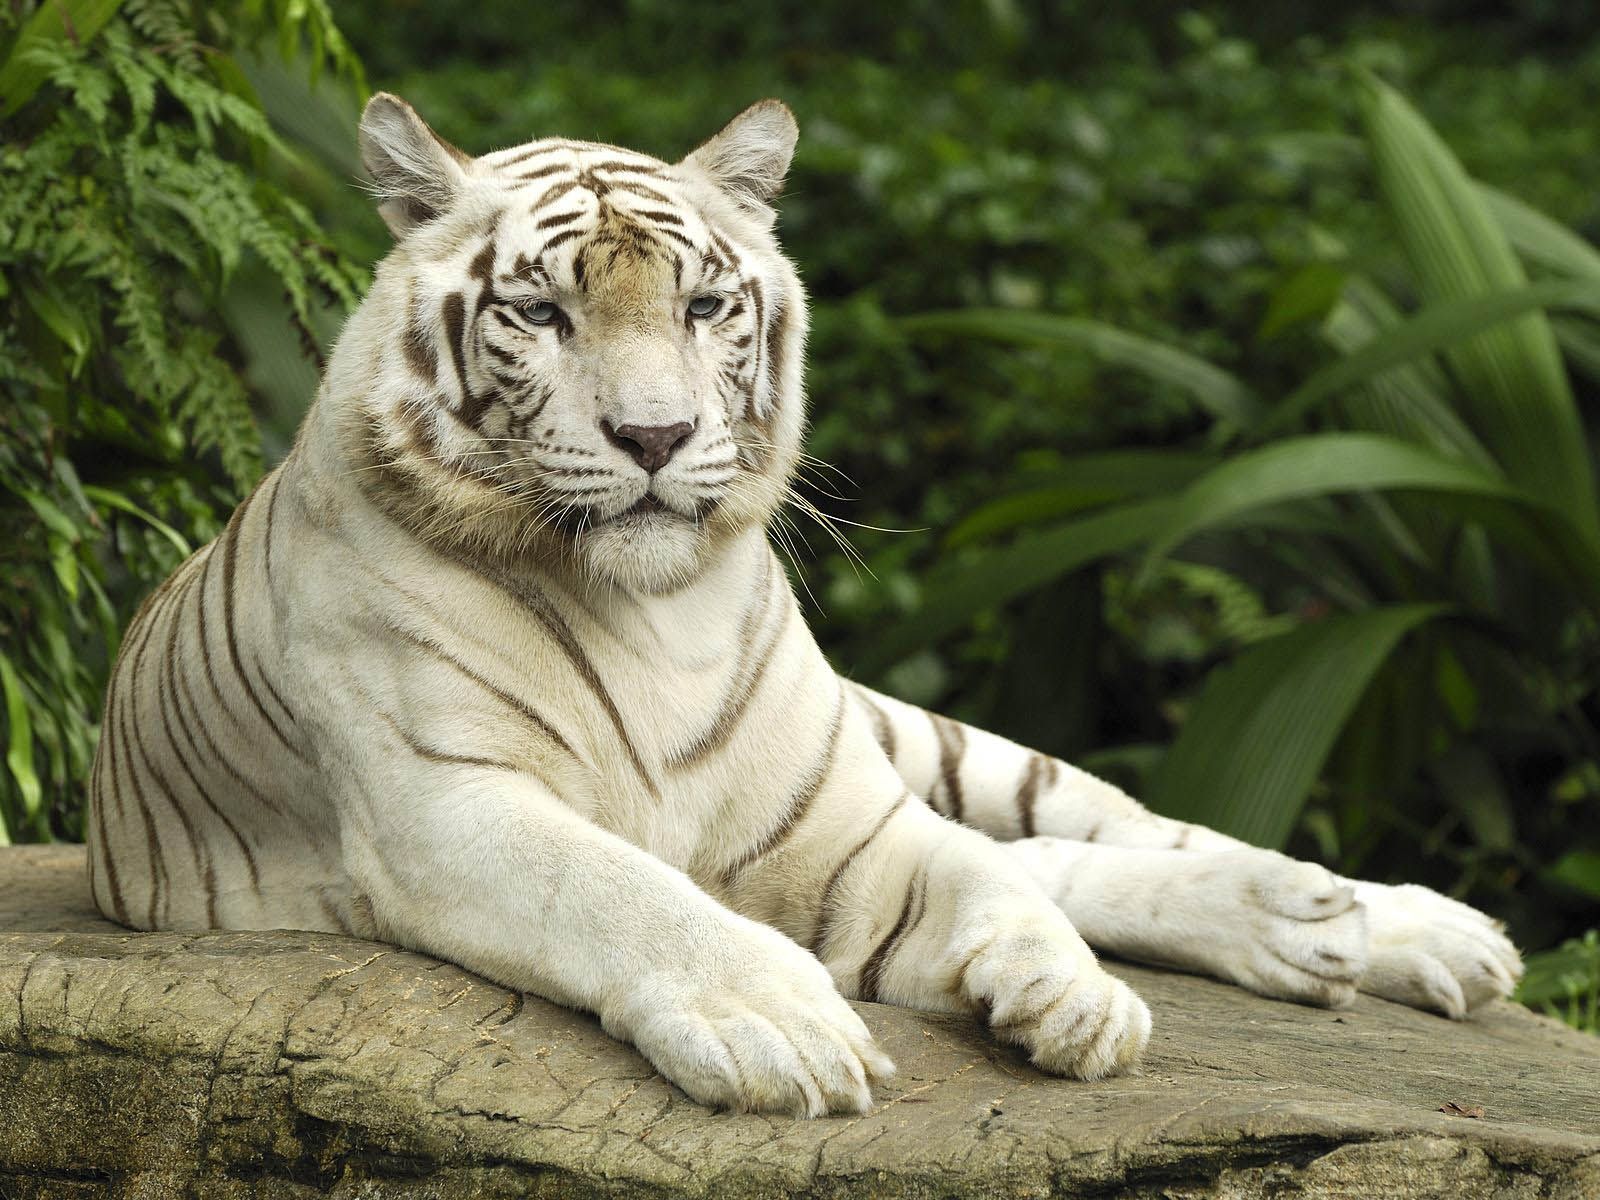 دانلود عکس دیدنی از ببر سفید وحشی بنگال در جنگل سبز